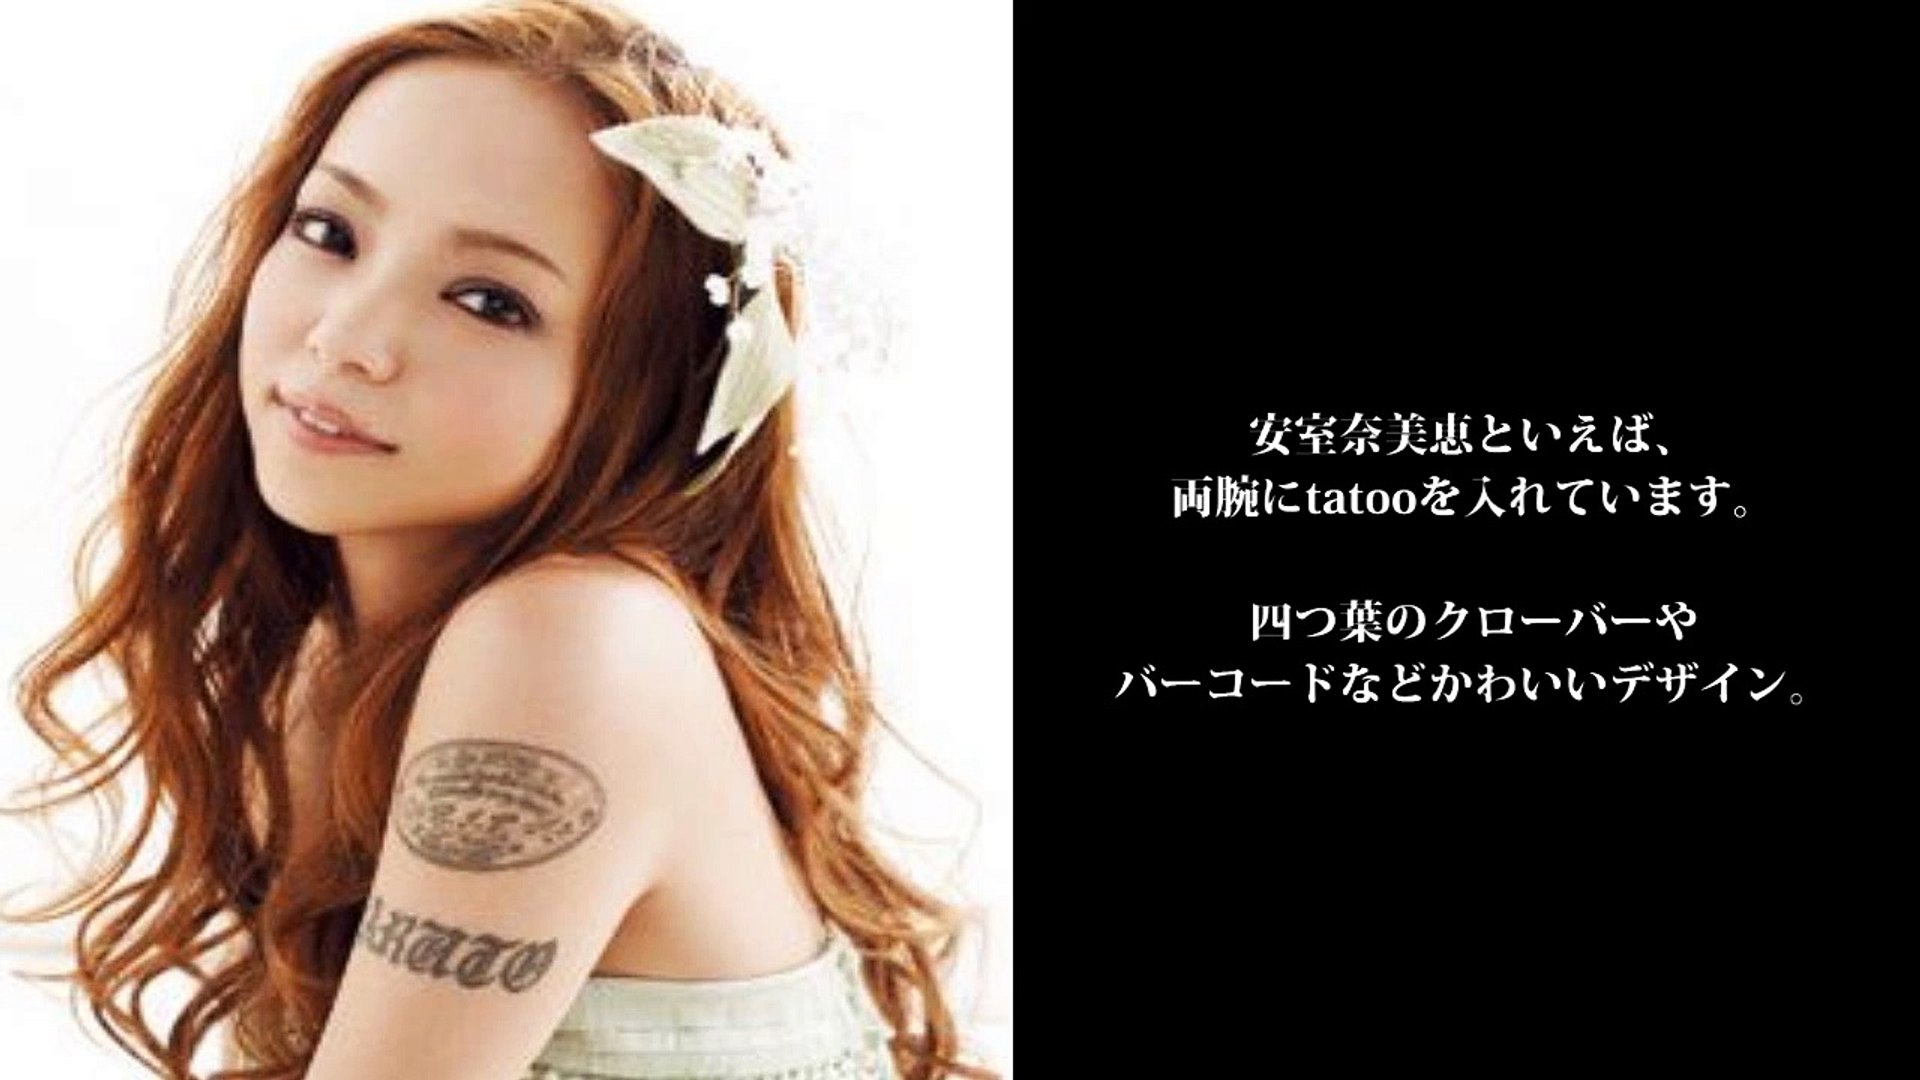 芸能人 タトゥー 安室奈美恵の刺青に隠された想いとは 有名人 芸能人 Video Dailymotion